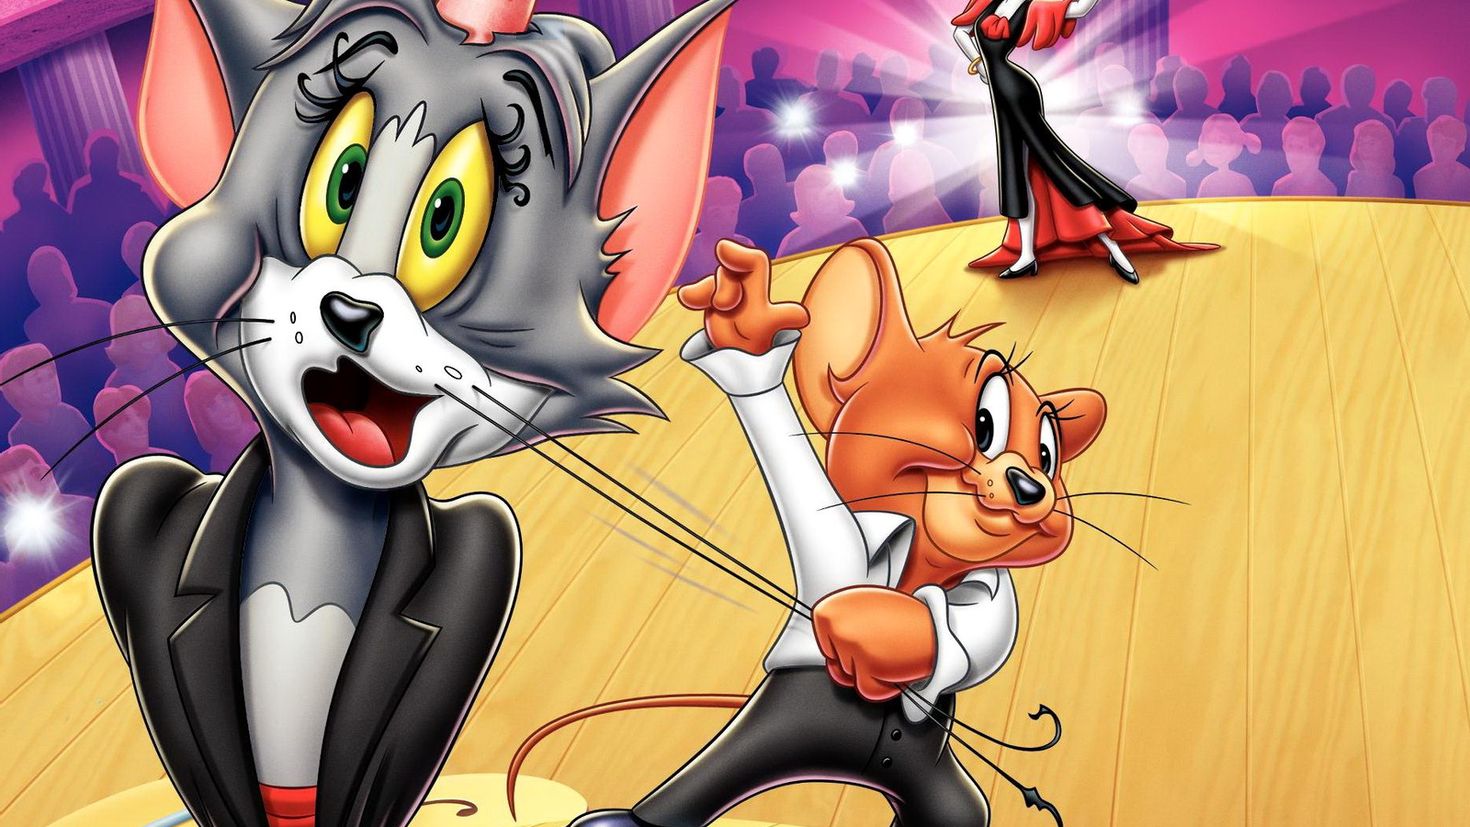 Игр й том. Том и Джерри. Tom and Jerry Tom. Том и Джерри (Tom and Jerry) 1940.